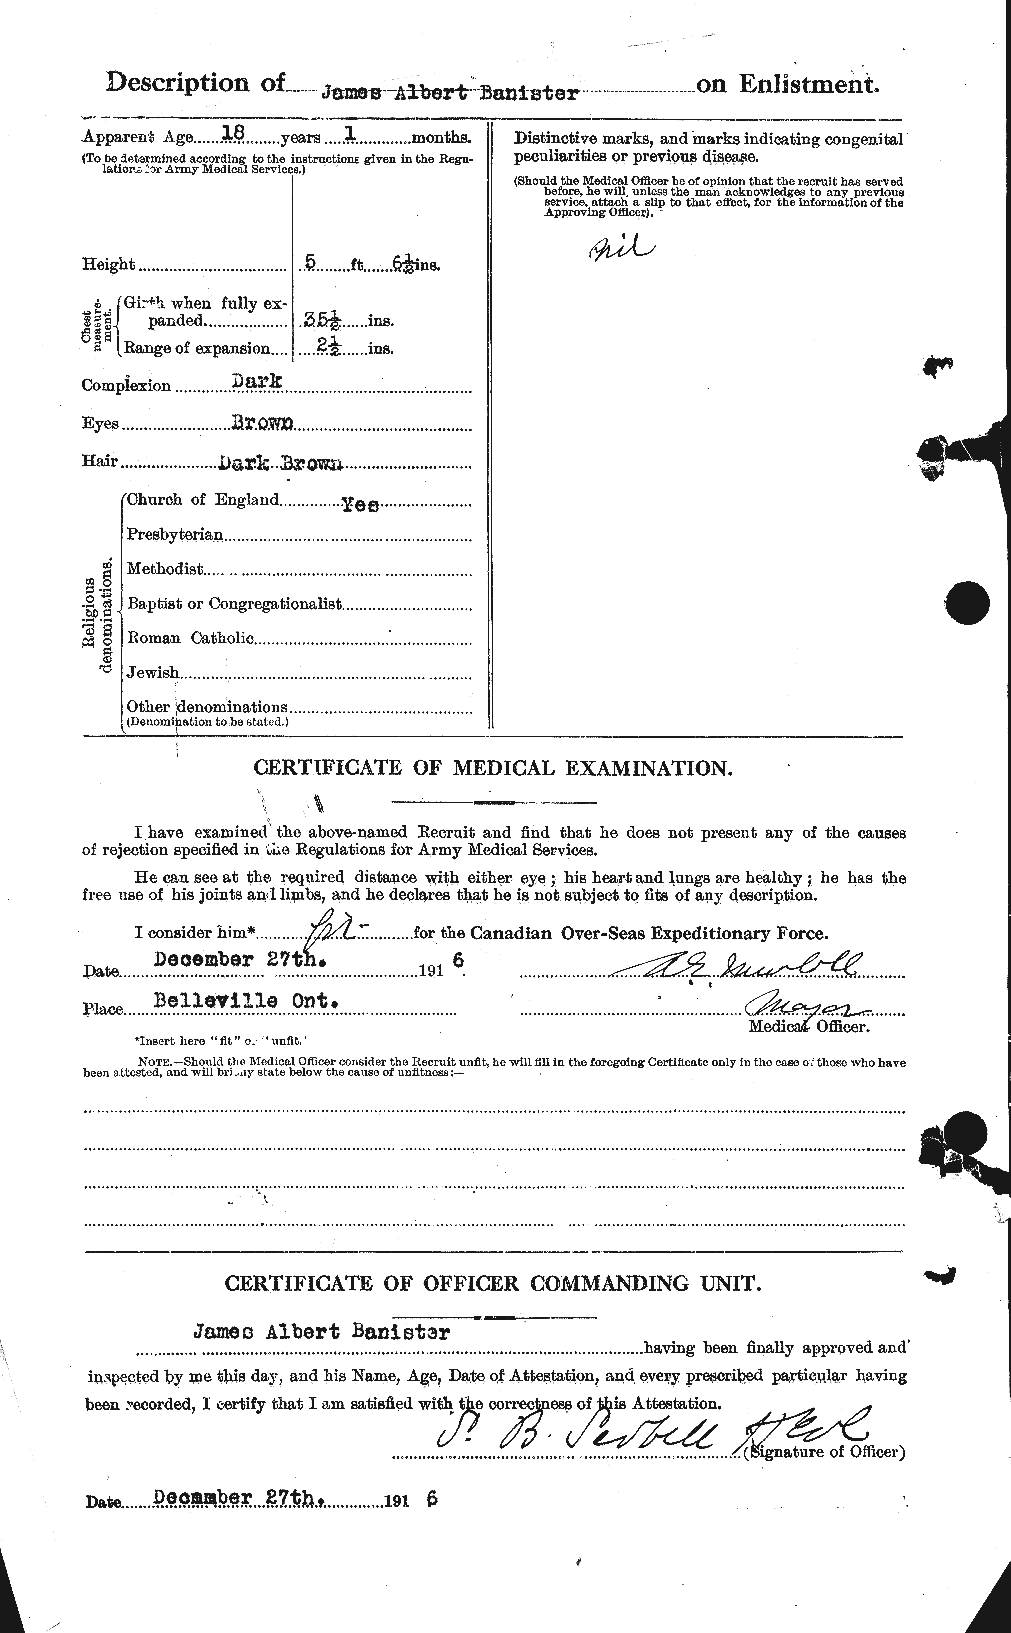 Dossiers du Personnel de la Première Guerre mondiale - CEC 219302b